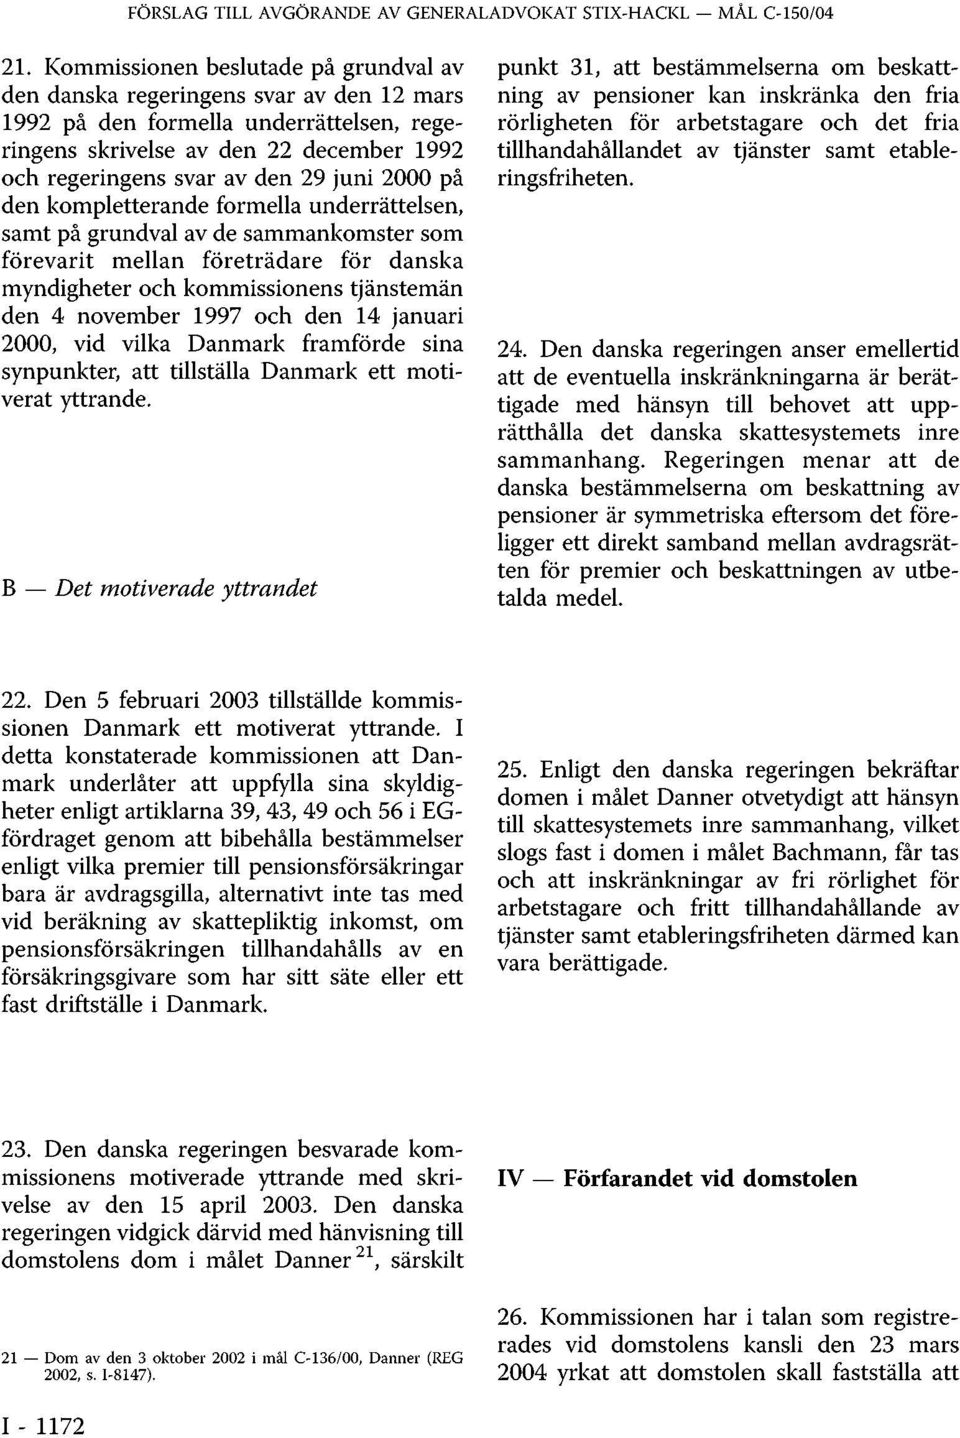 2000 på den kompletterande formella underrättelsen, samt på grundval av de sammankomster som förevarit mellan företrädare för danska myndigheter och kommissionens tjänstemän den 4 november 1997 och